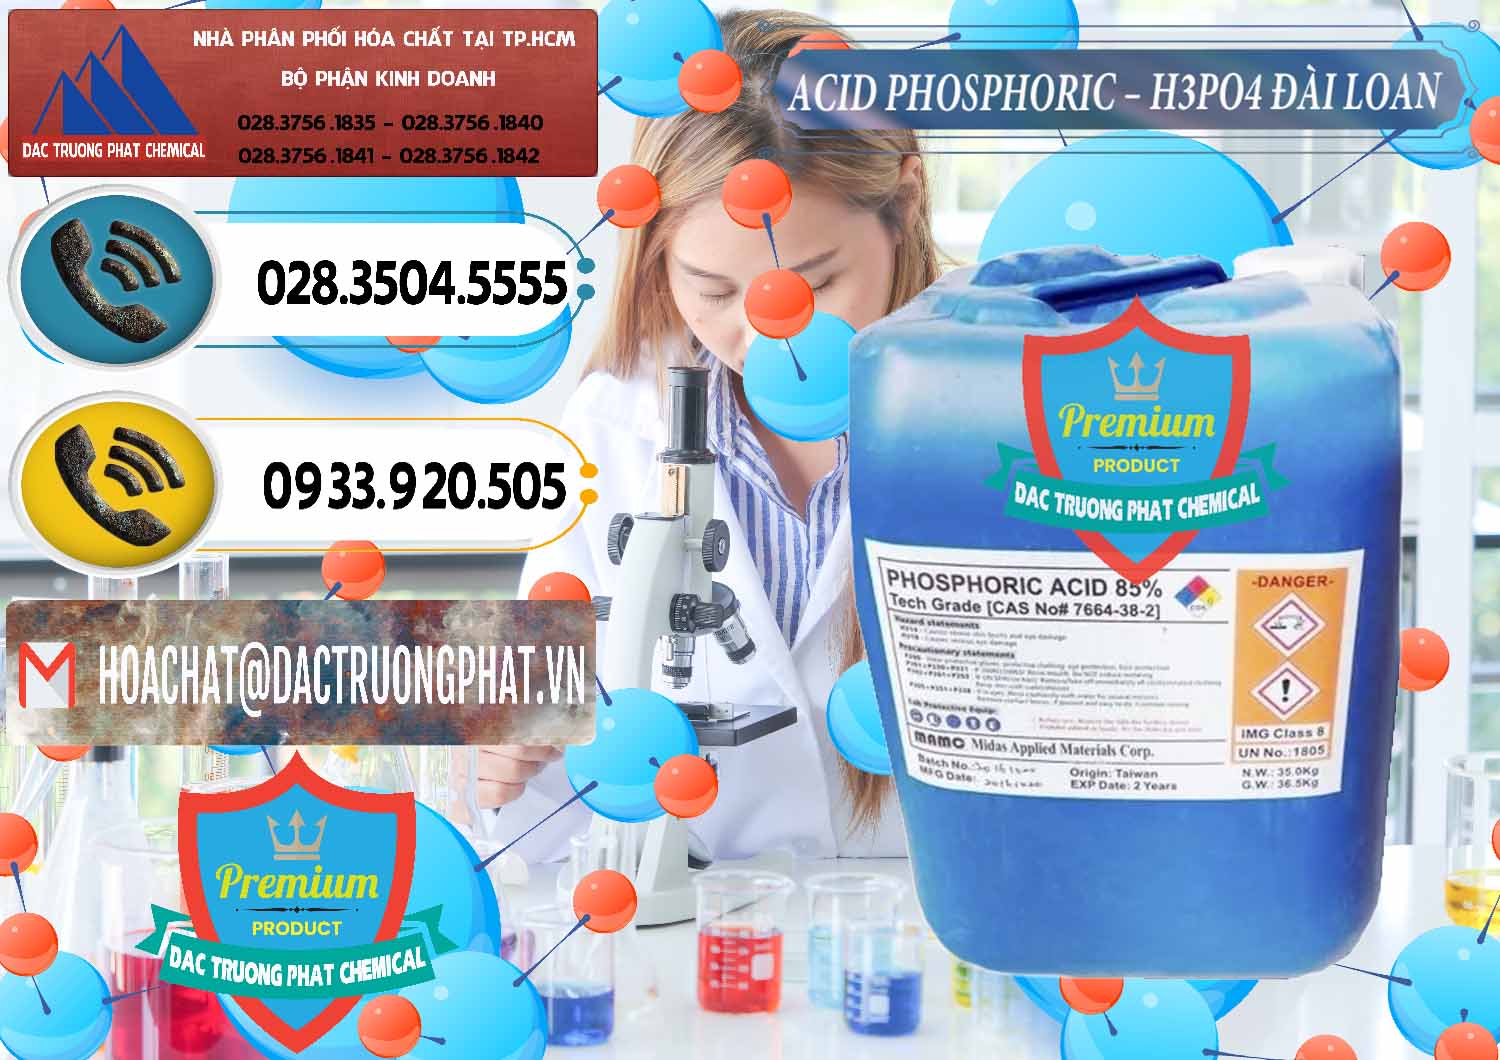 Công ty chuyên bán _ cung cấp Axit Phosphoric - Acid Phosphoric H3PO4 85% Đài Loan Taiwan - 0351 - Đơn vị kinh doanh - cung cấp hóa chất tại TP.HCM - hoachatdetnhuom.vn